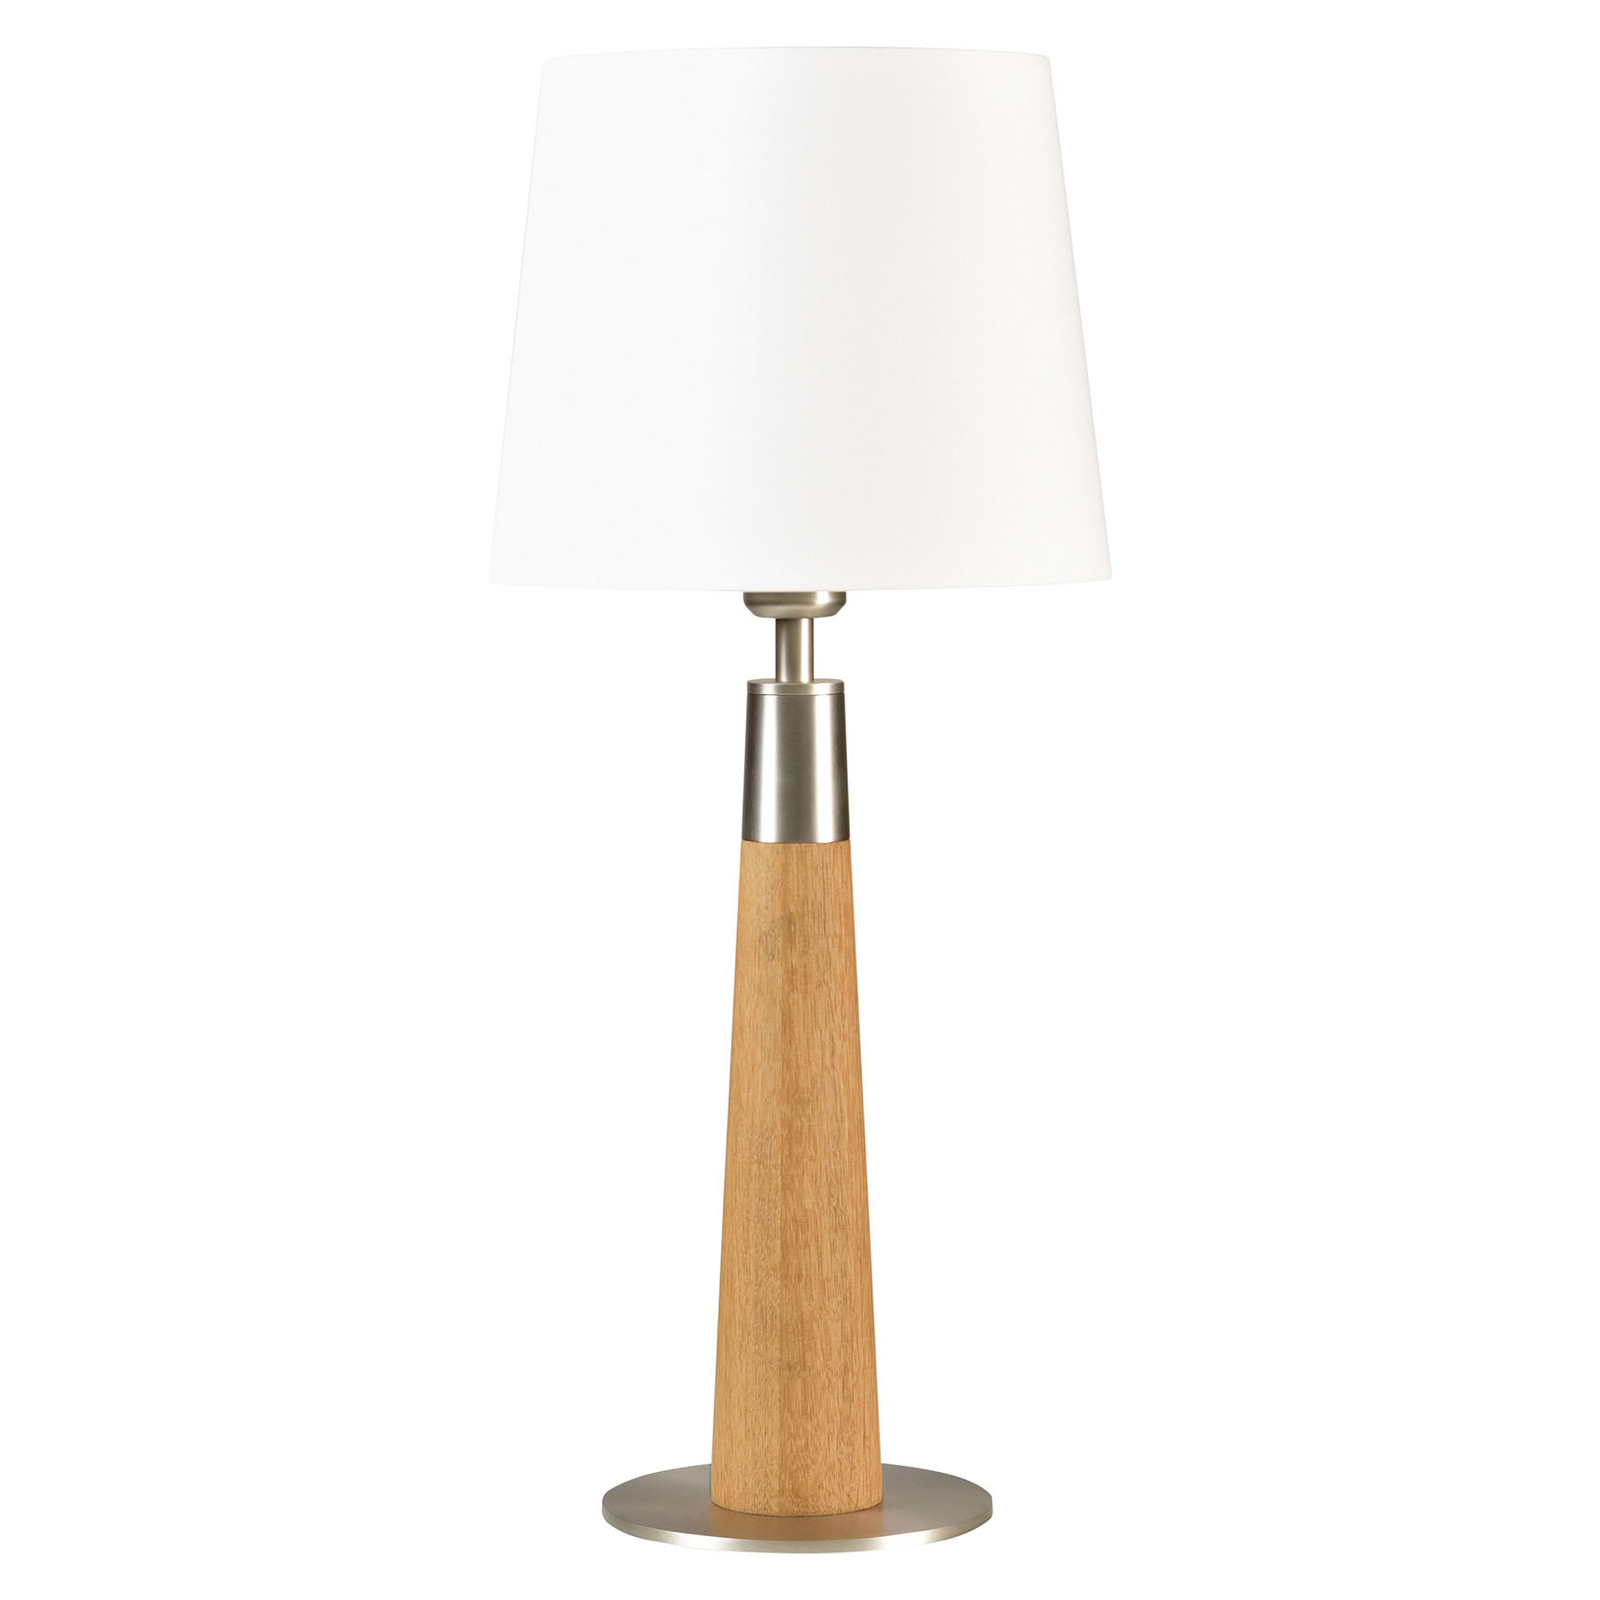 HerzBlut Conico lampa stołowa biała, dąb, 58cm